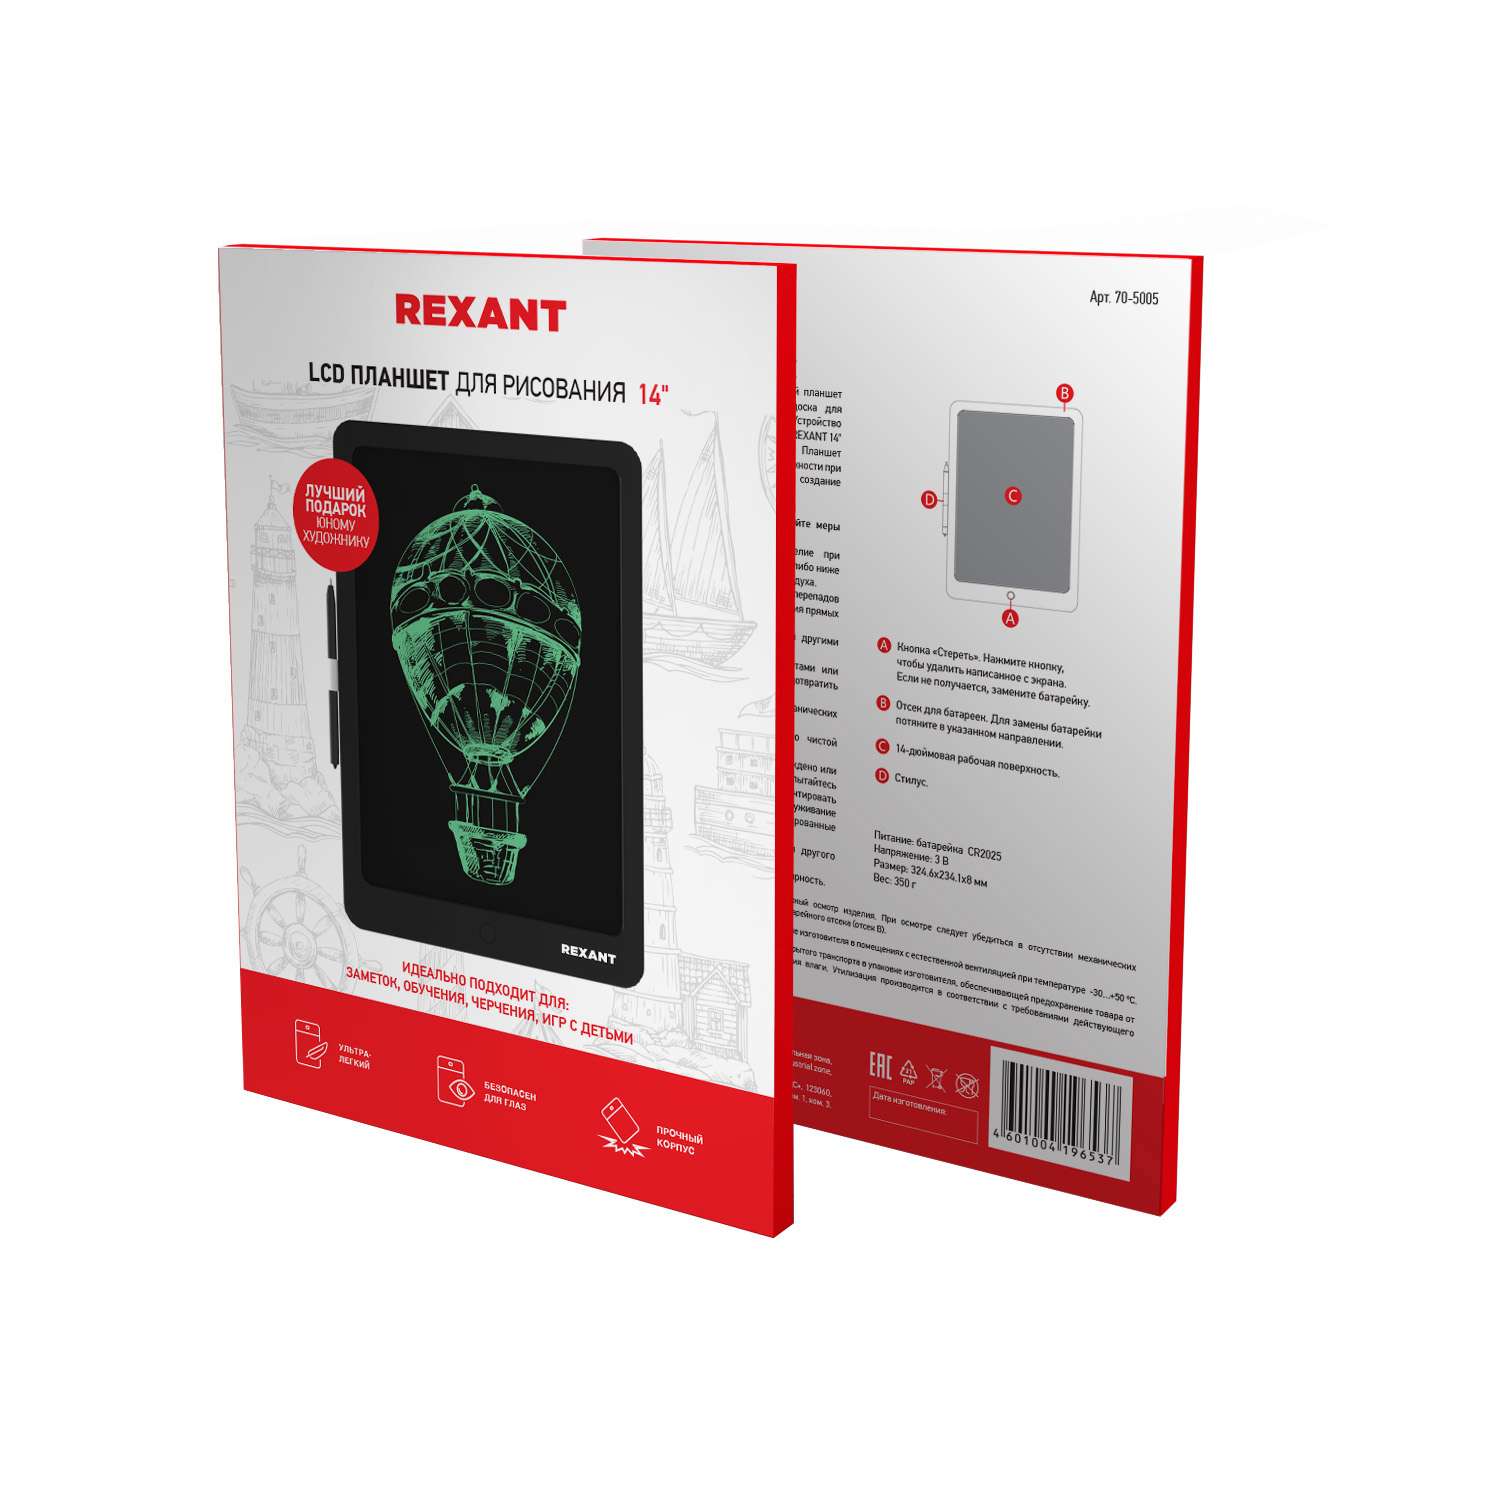 Электронный планшет REXANT для рисования 14 дюймов - фото 2